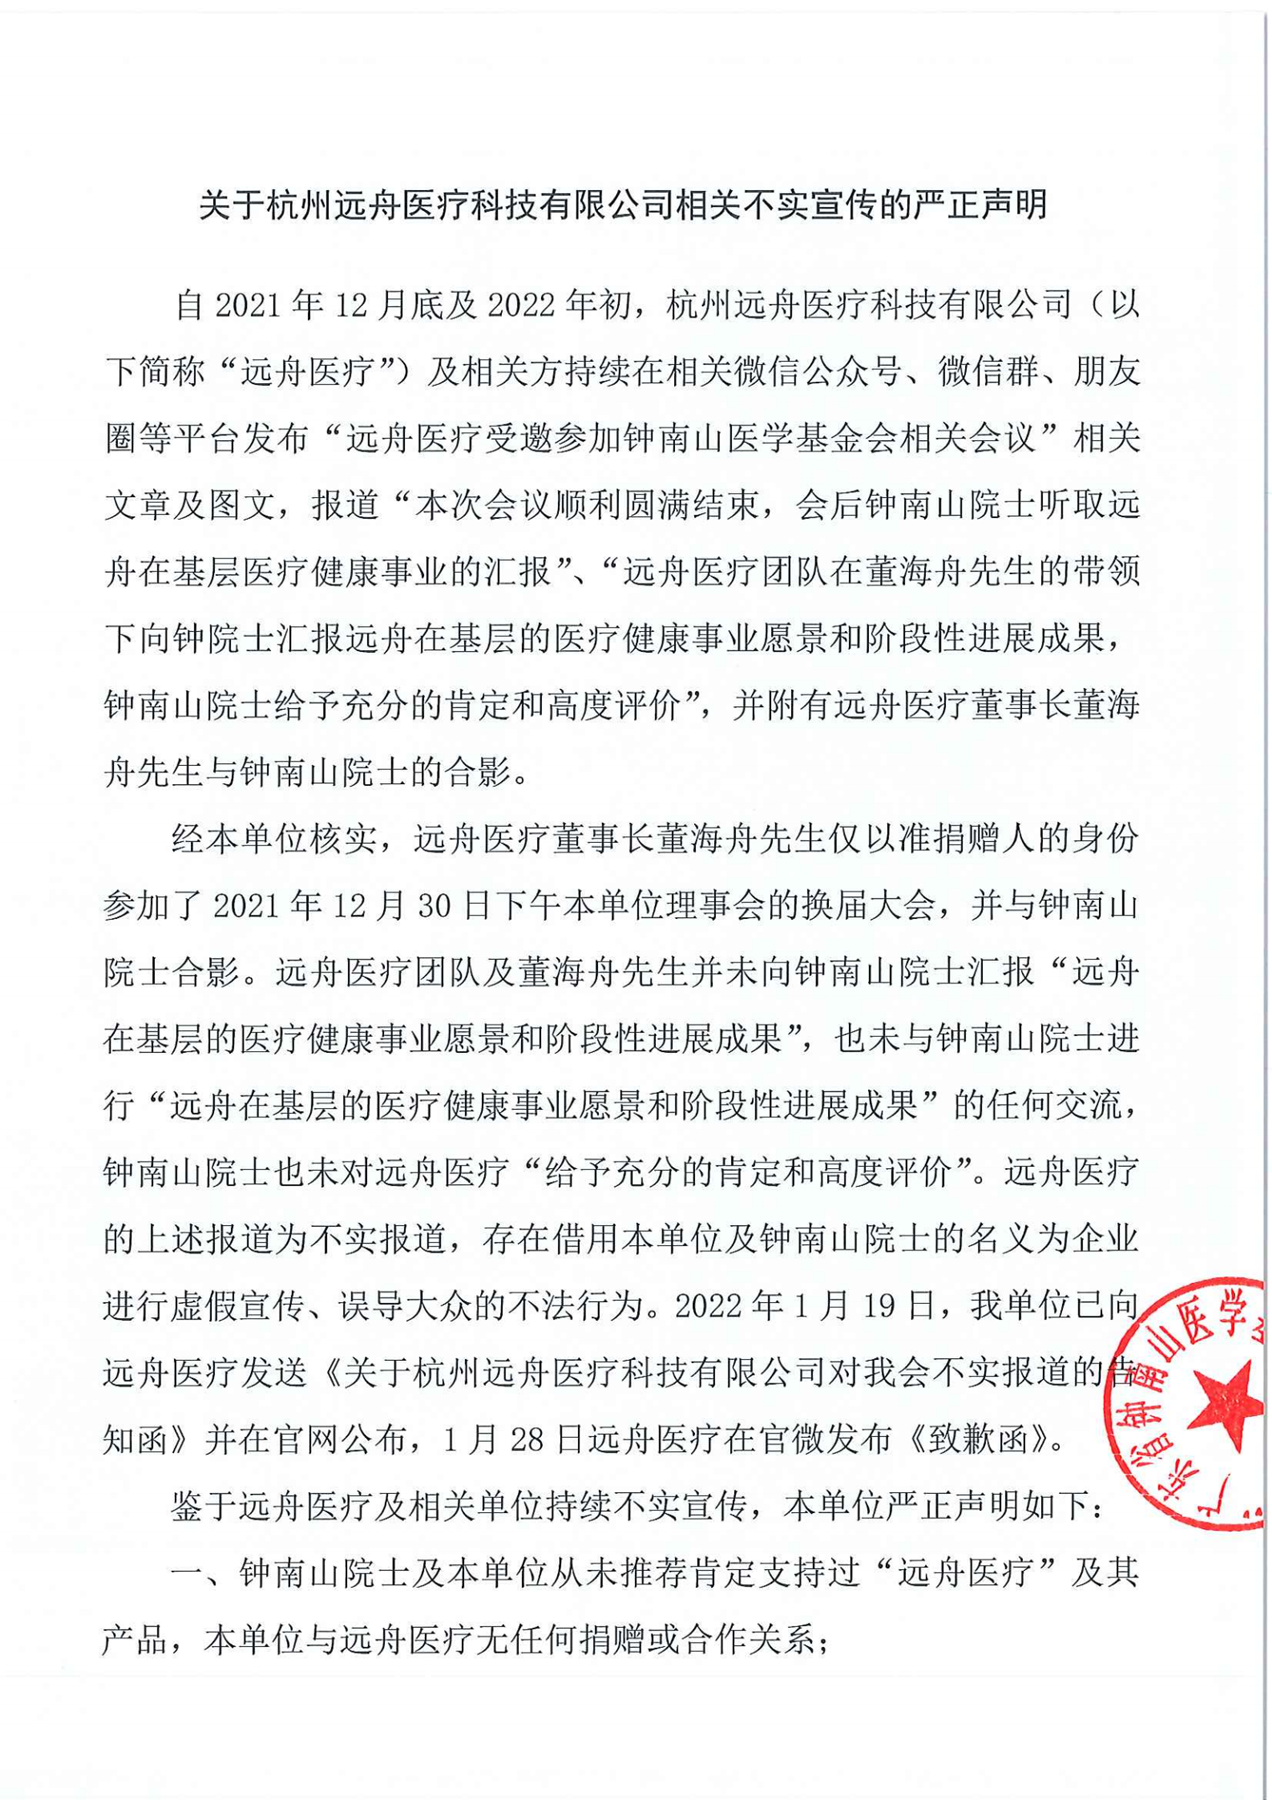 关于杭州远舟医疗科技有限公司相关不实宣传的严正声明_00.png